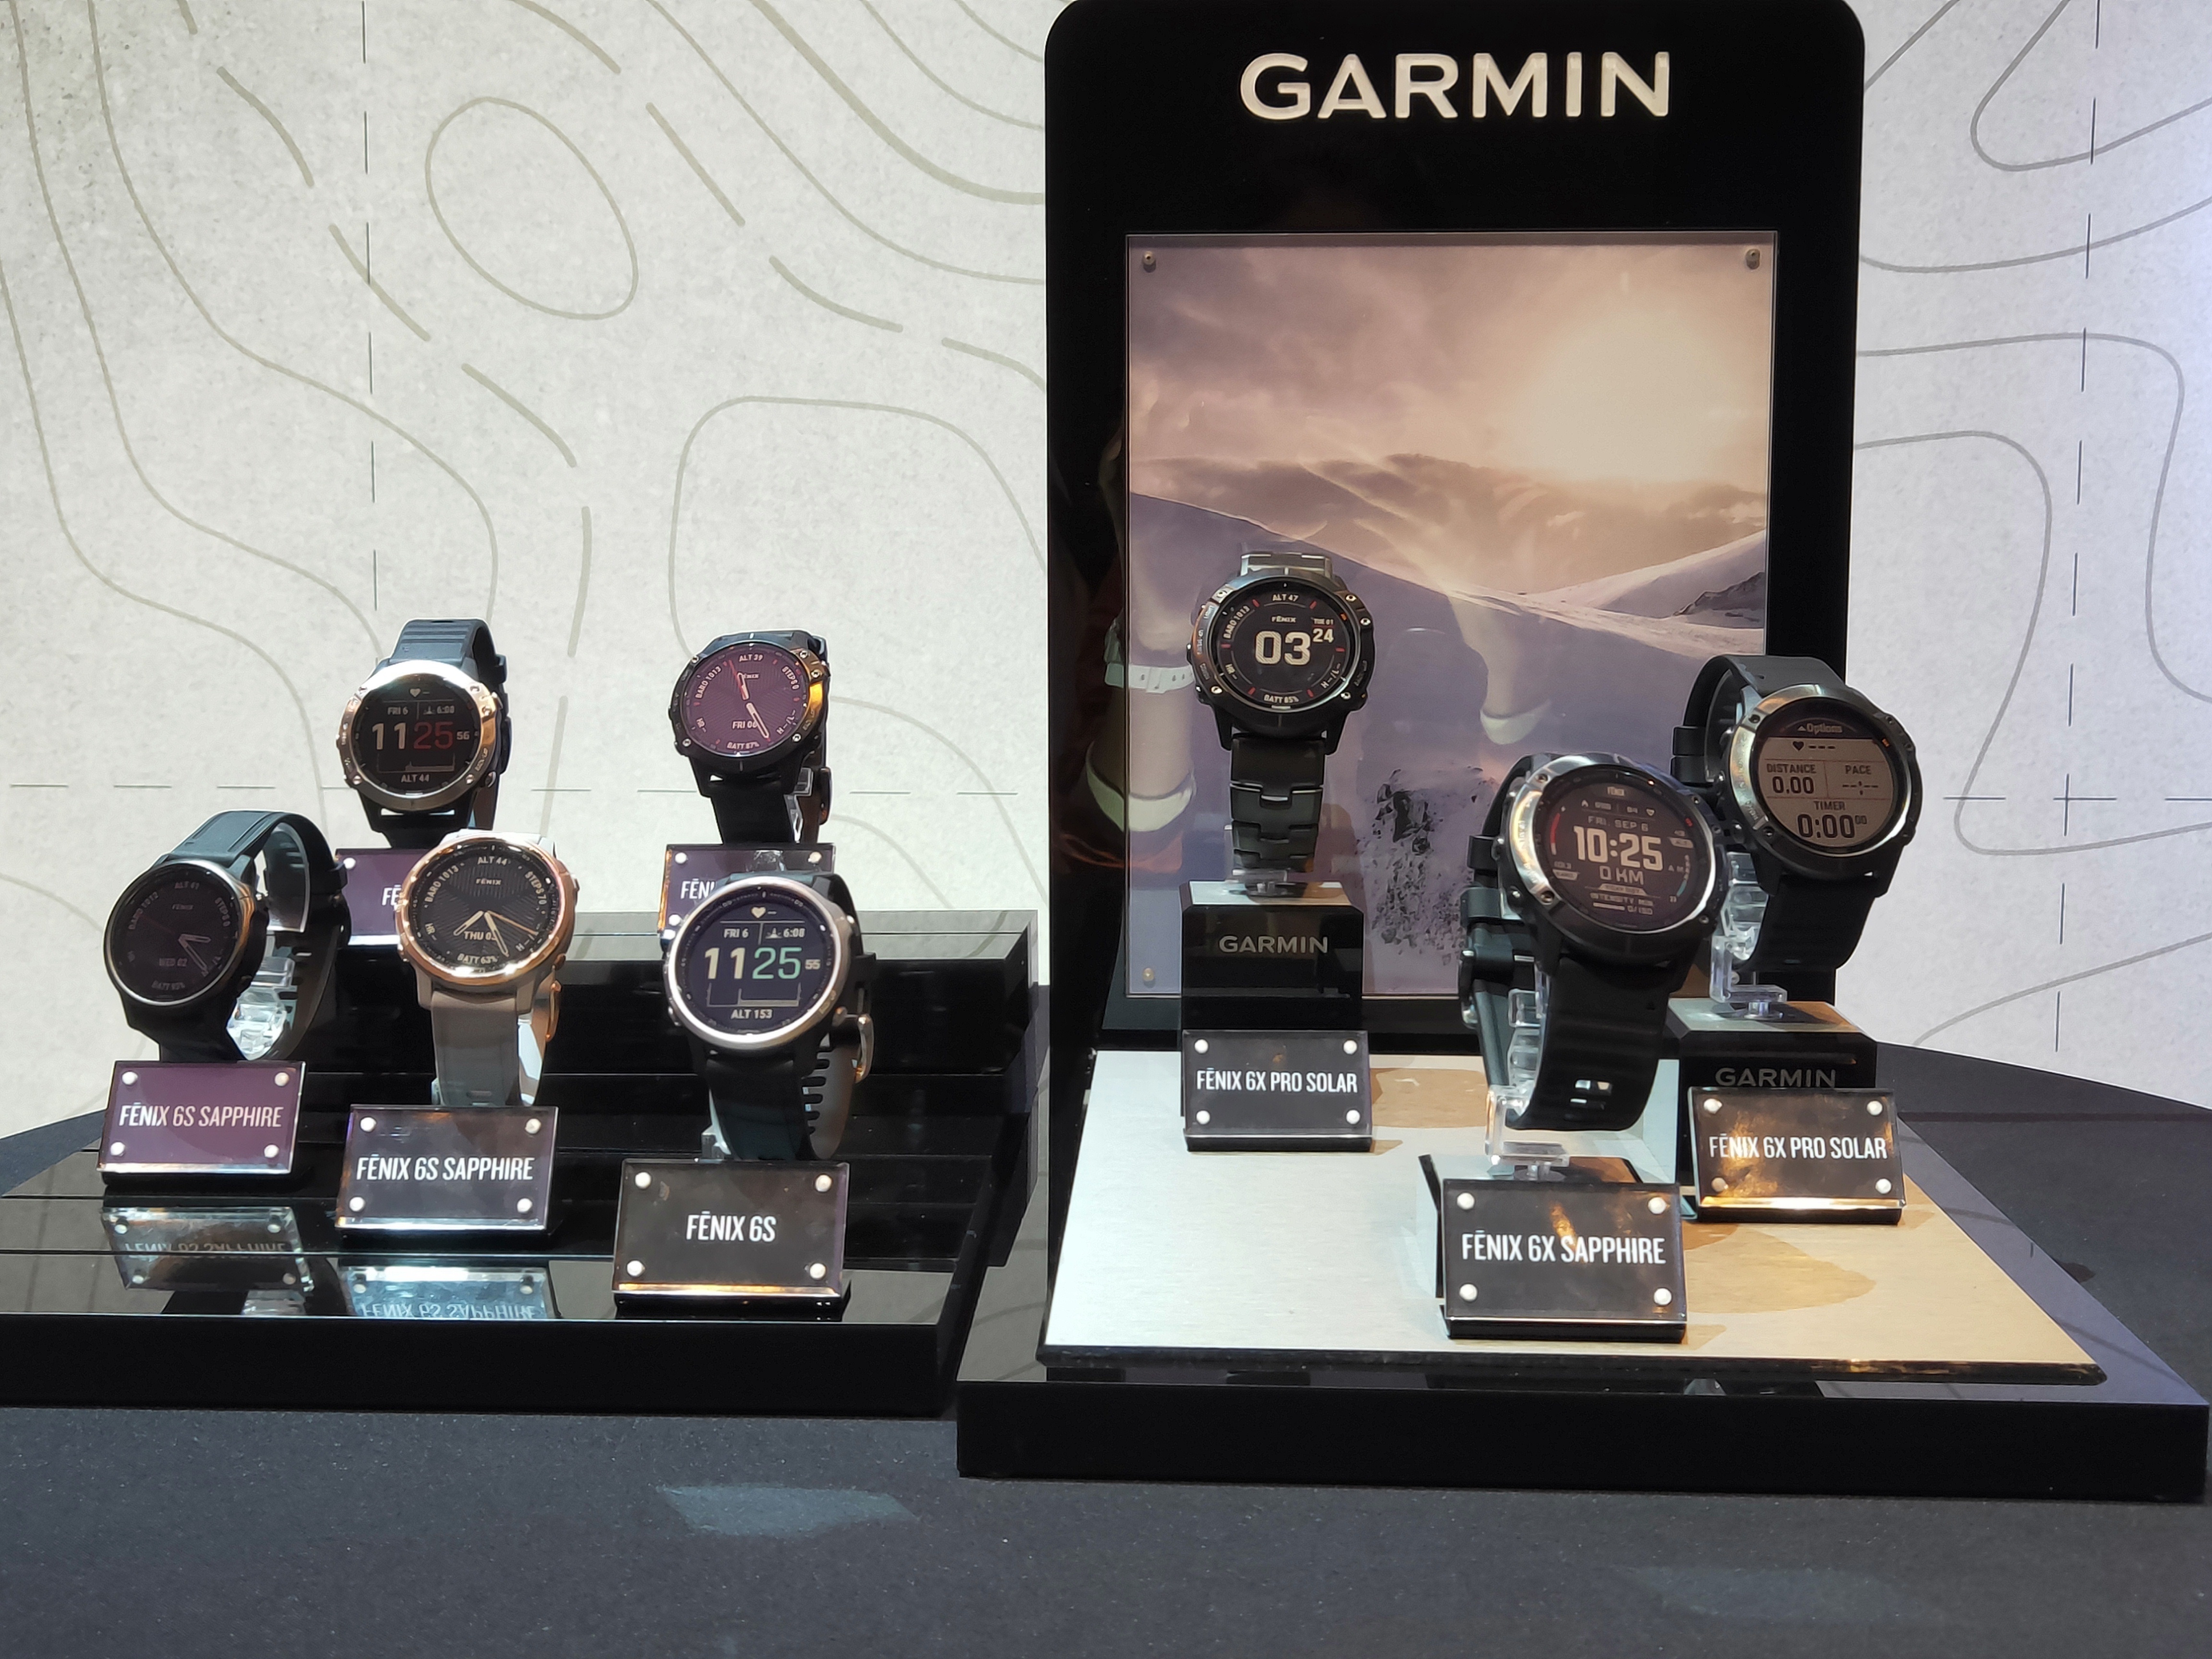 Garmin ra mắt đồng hồ dùng pin năng lượng mặt trời Fenix 6 series, giá 28,99 triệu đồng